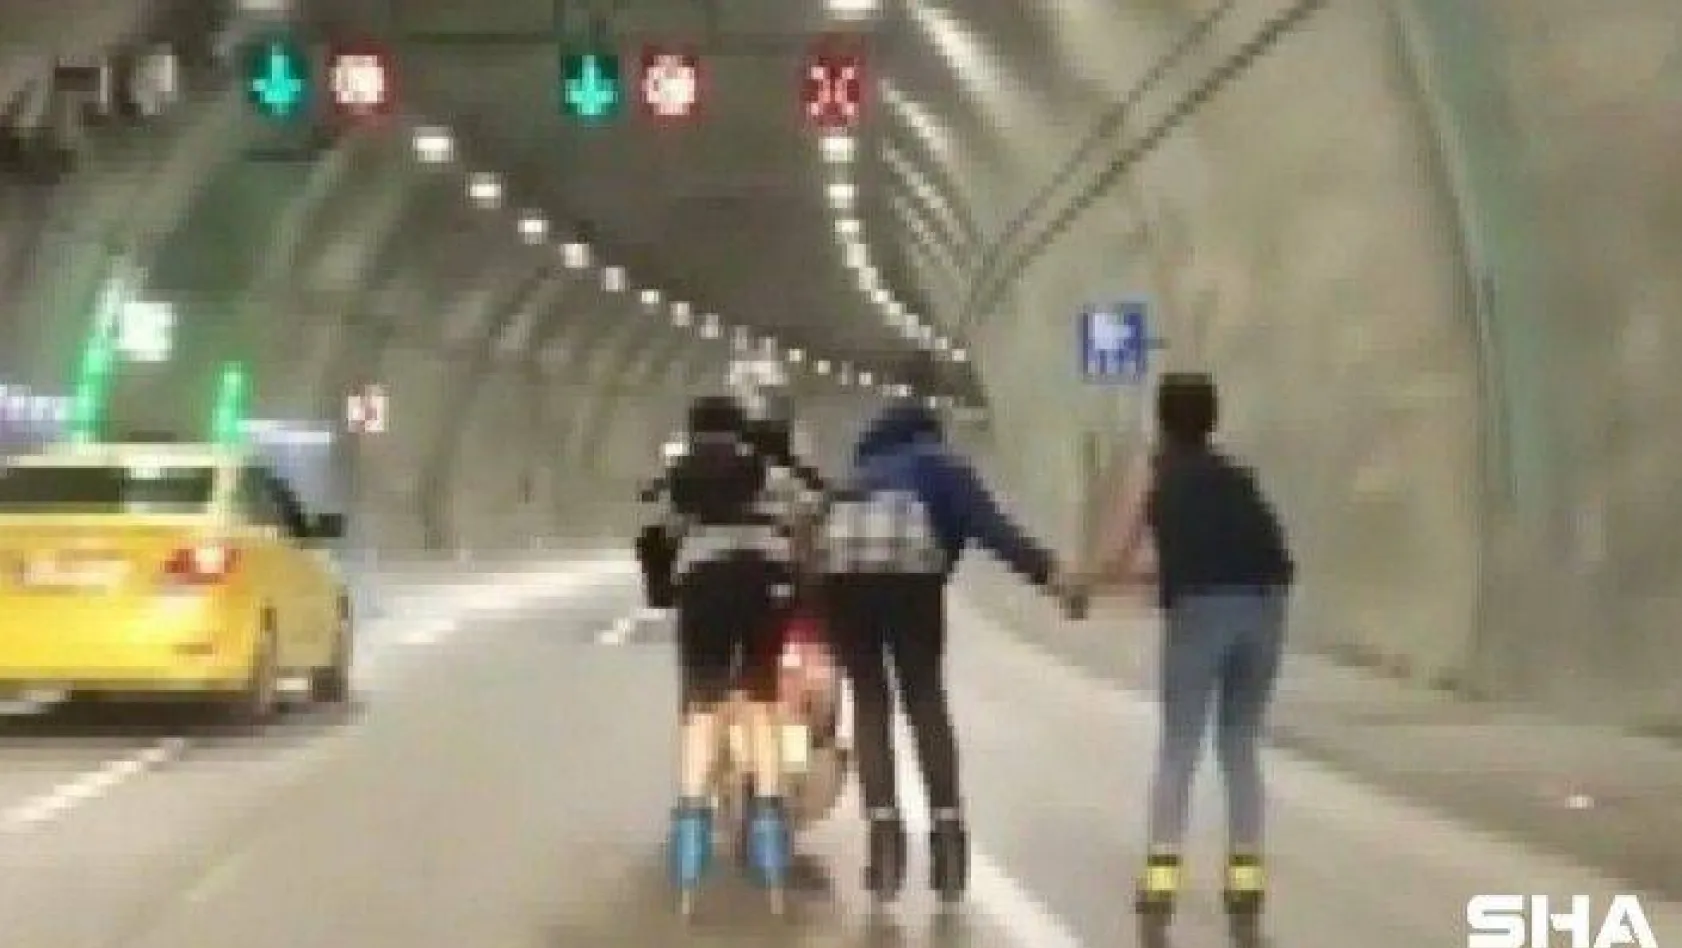 (Özel) Üsküdar'da patenci gençlerin motosiklet peşindeki tehlikeli yolculuğu